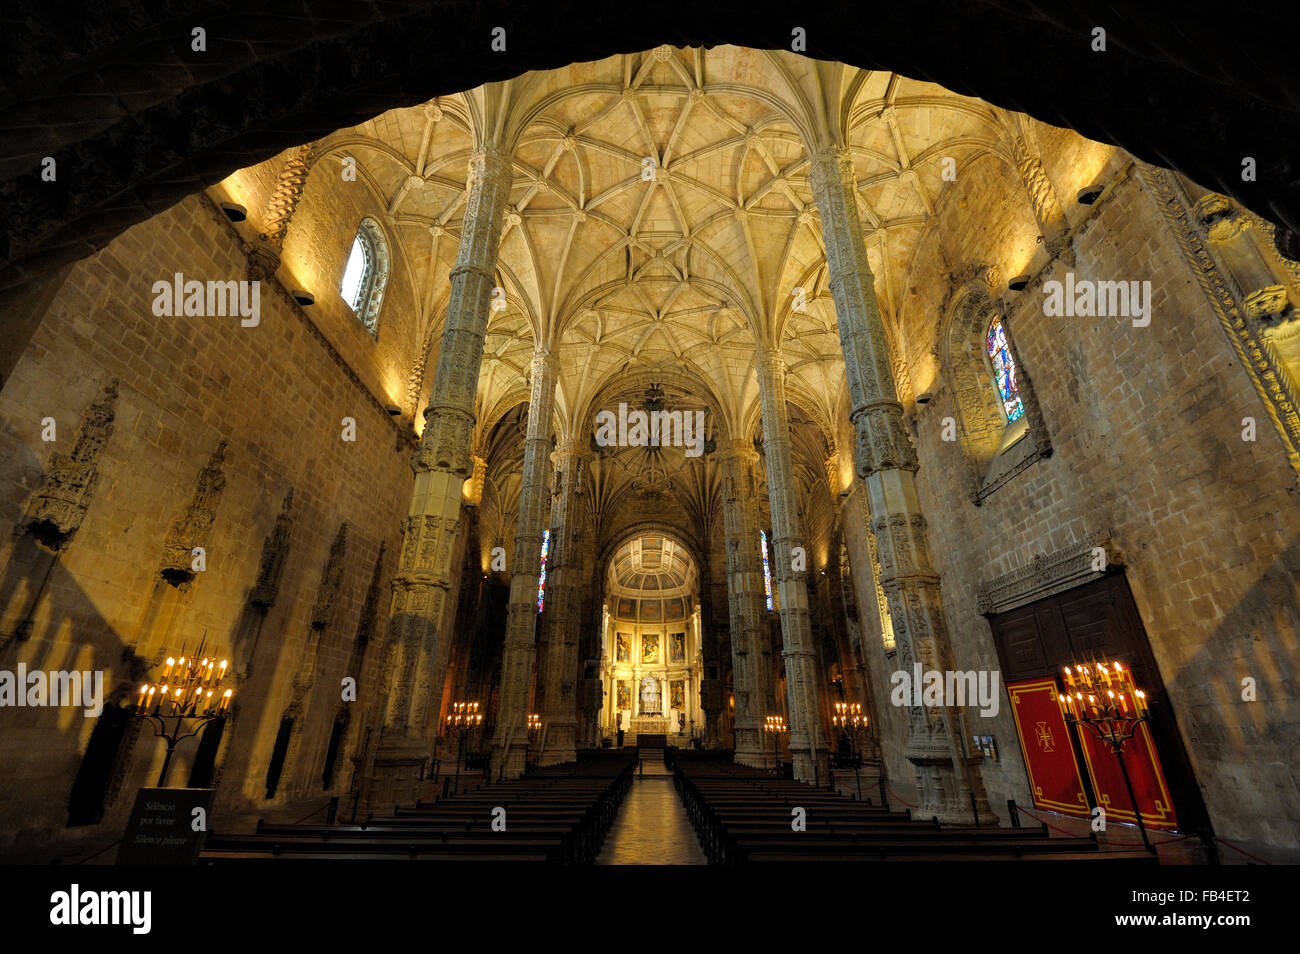 Mosteiro dos Jeronimos, Belem, Lisboa, Estremadura, Portugal Stock Photo